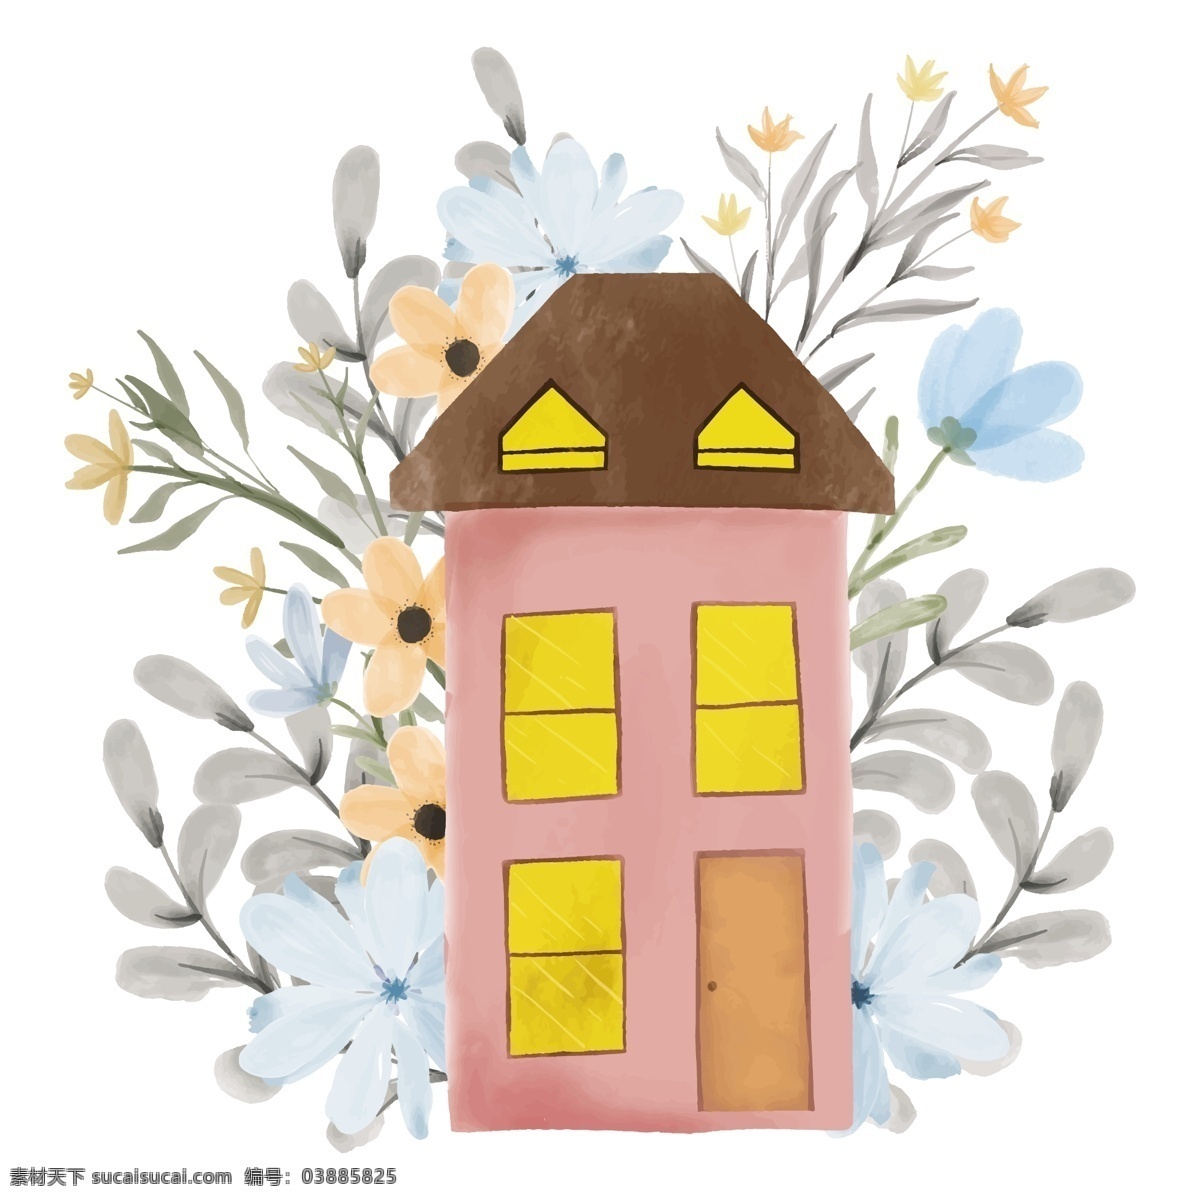 水彩小屋图片 水彩小屋 水彩花朵 手绘 小屋 房屋 花 淡彩 可爱 卡通房屋 卡通设计